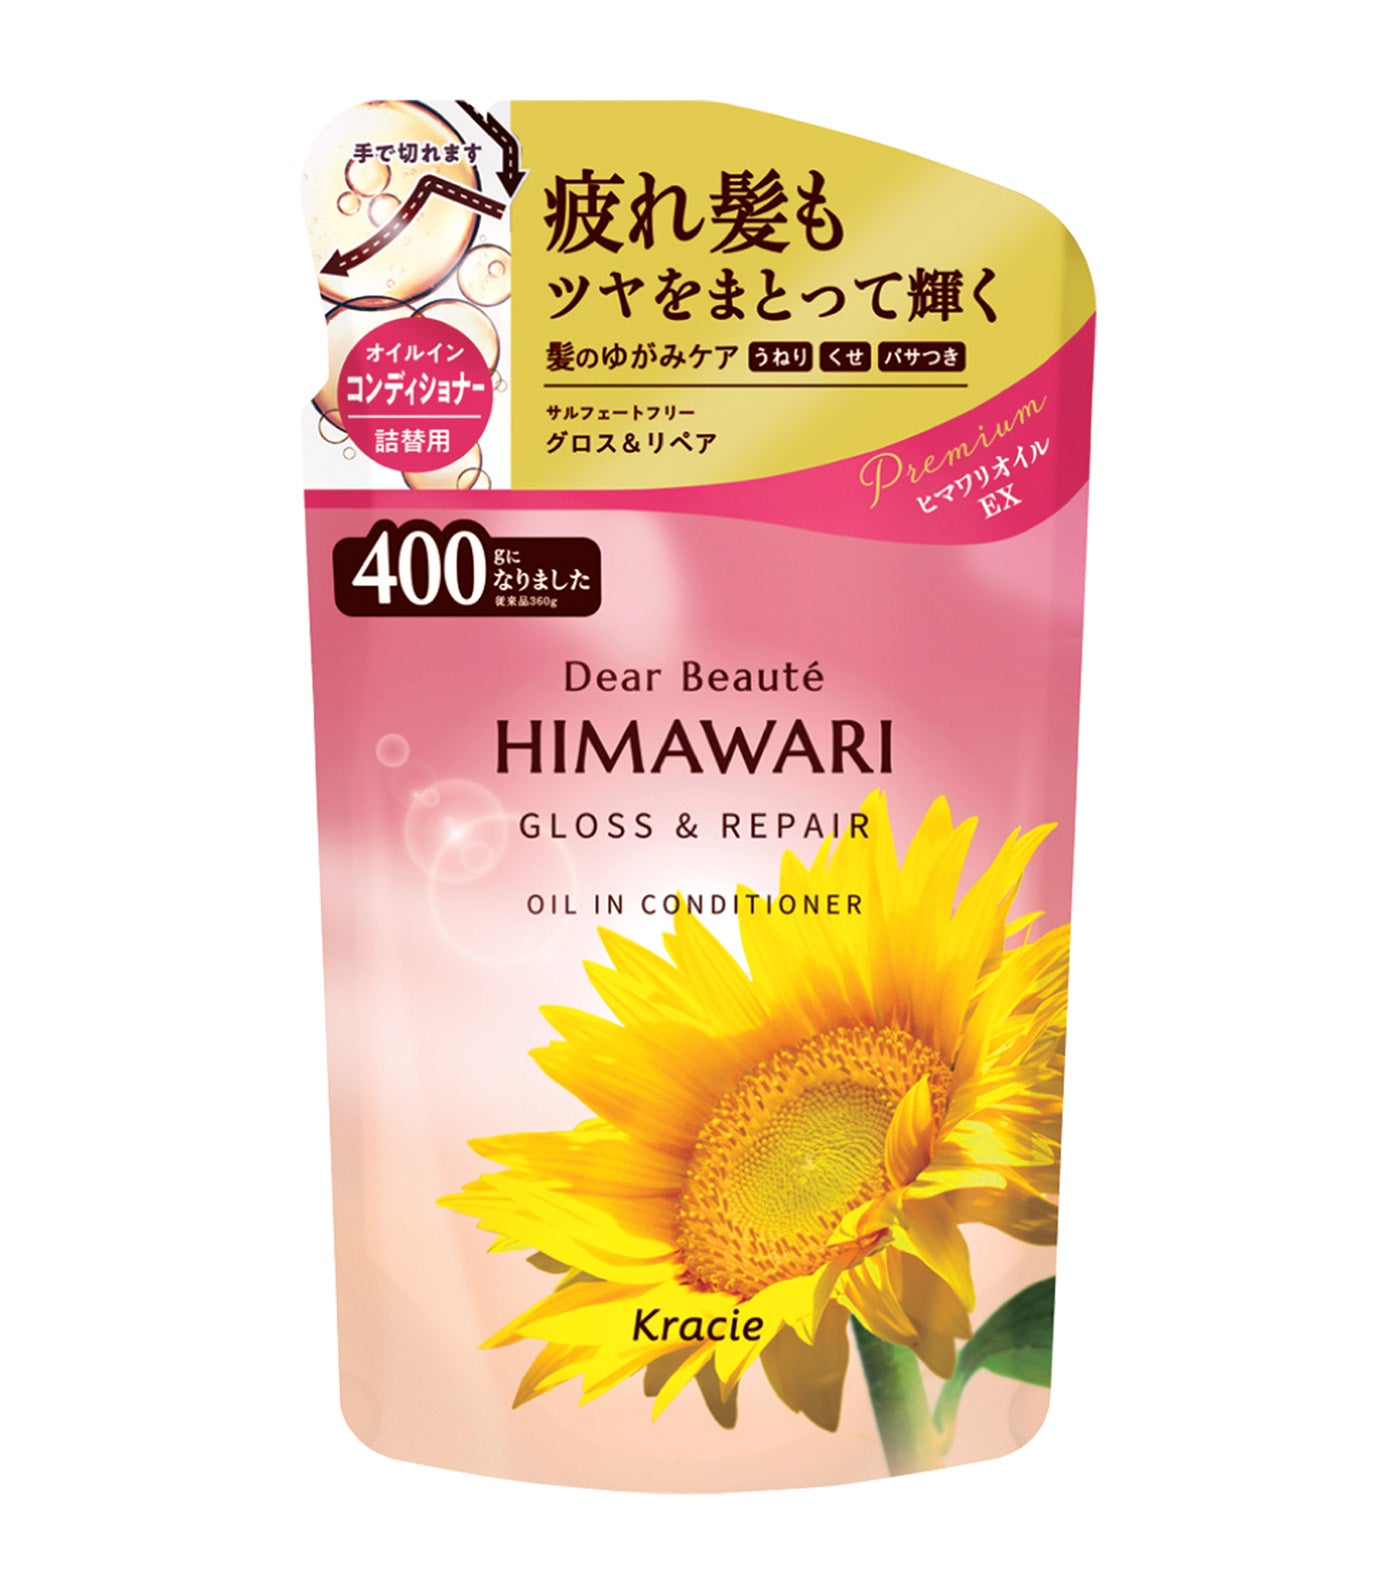 Dear Beaute Himawari Gloss & Repair Oil In Conditioner Refill Pack